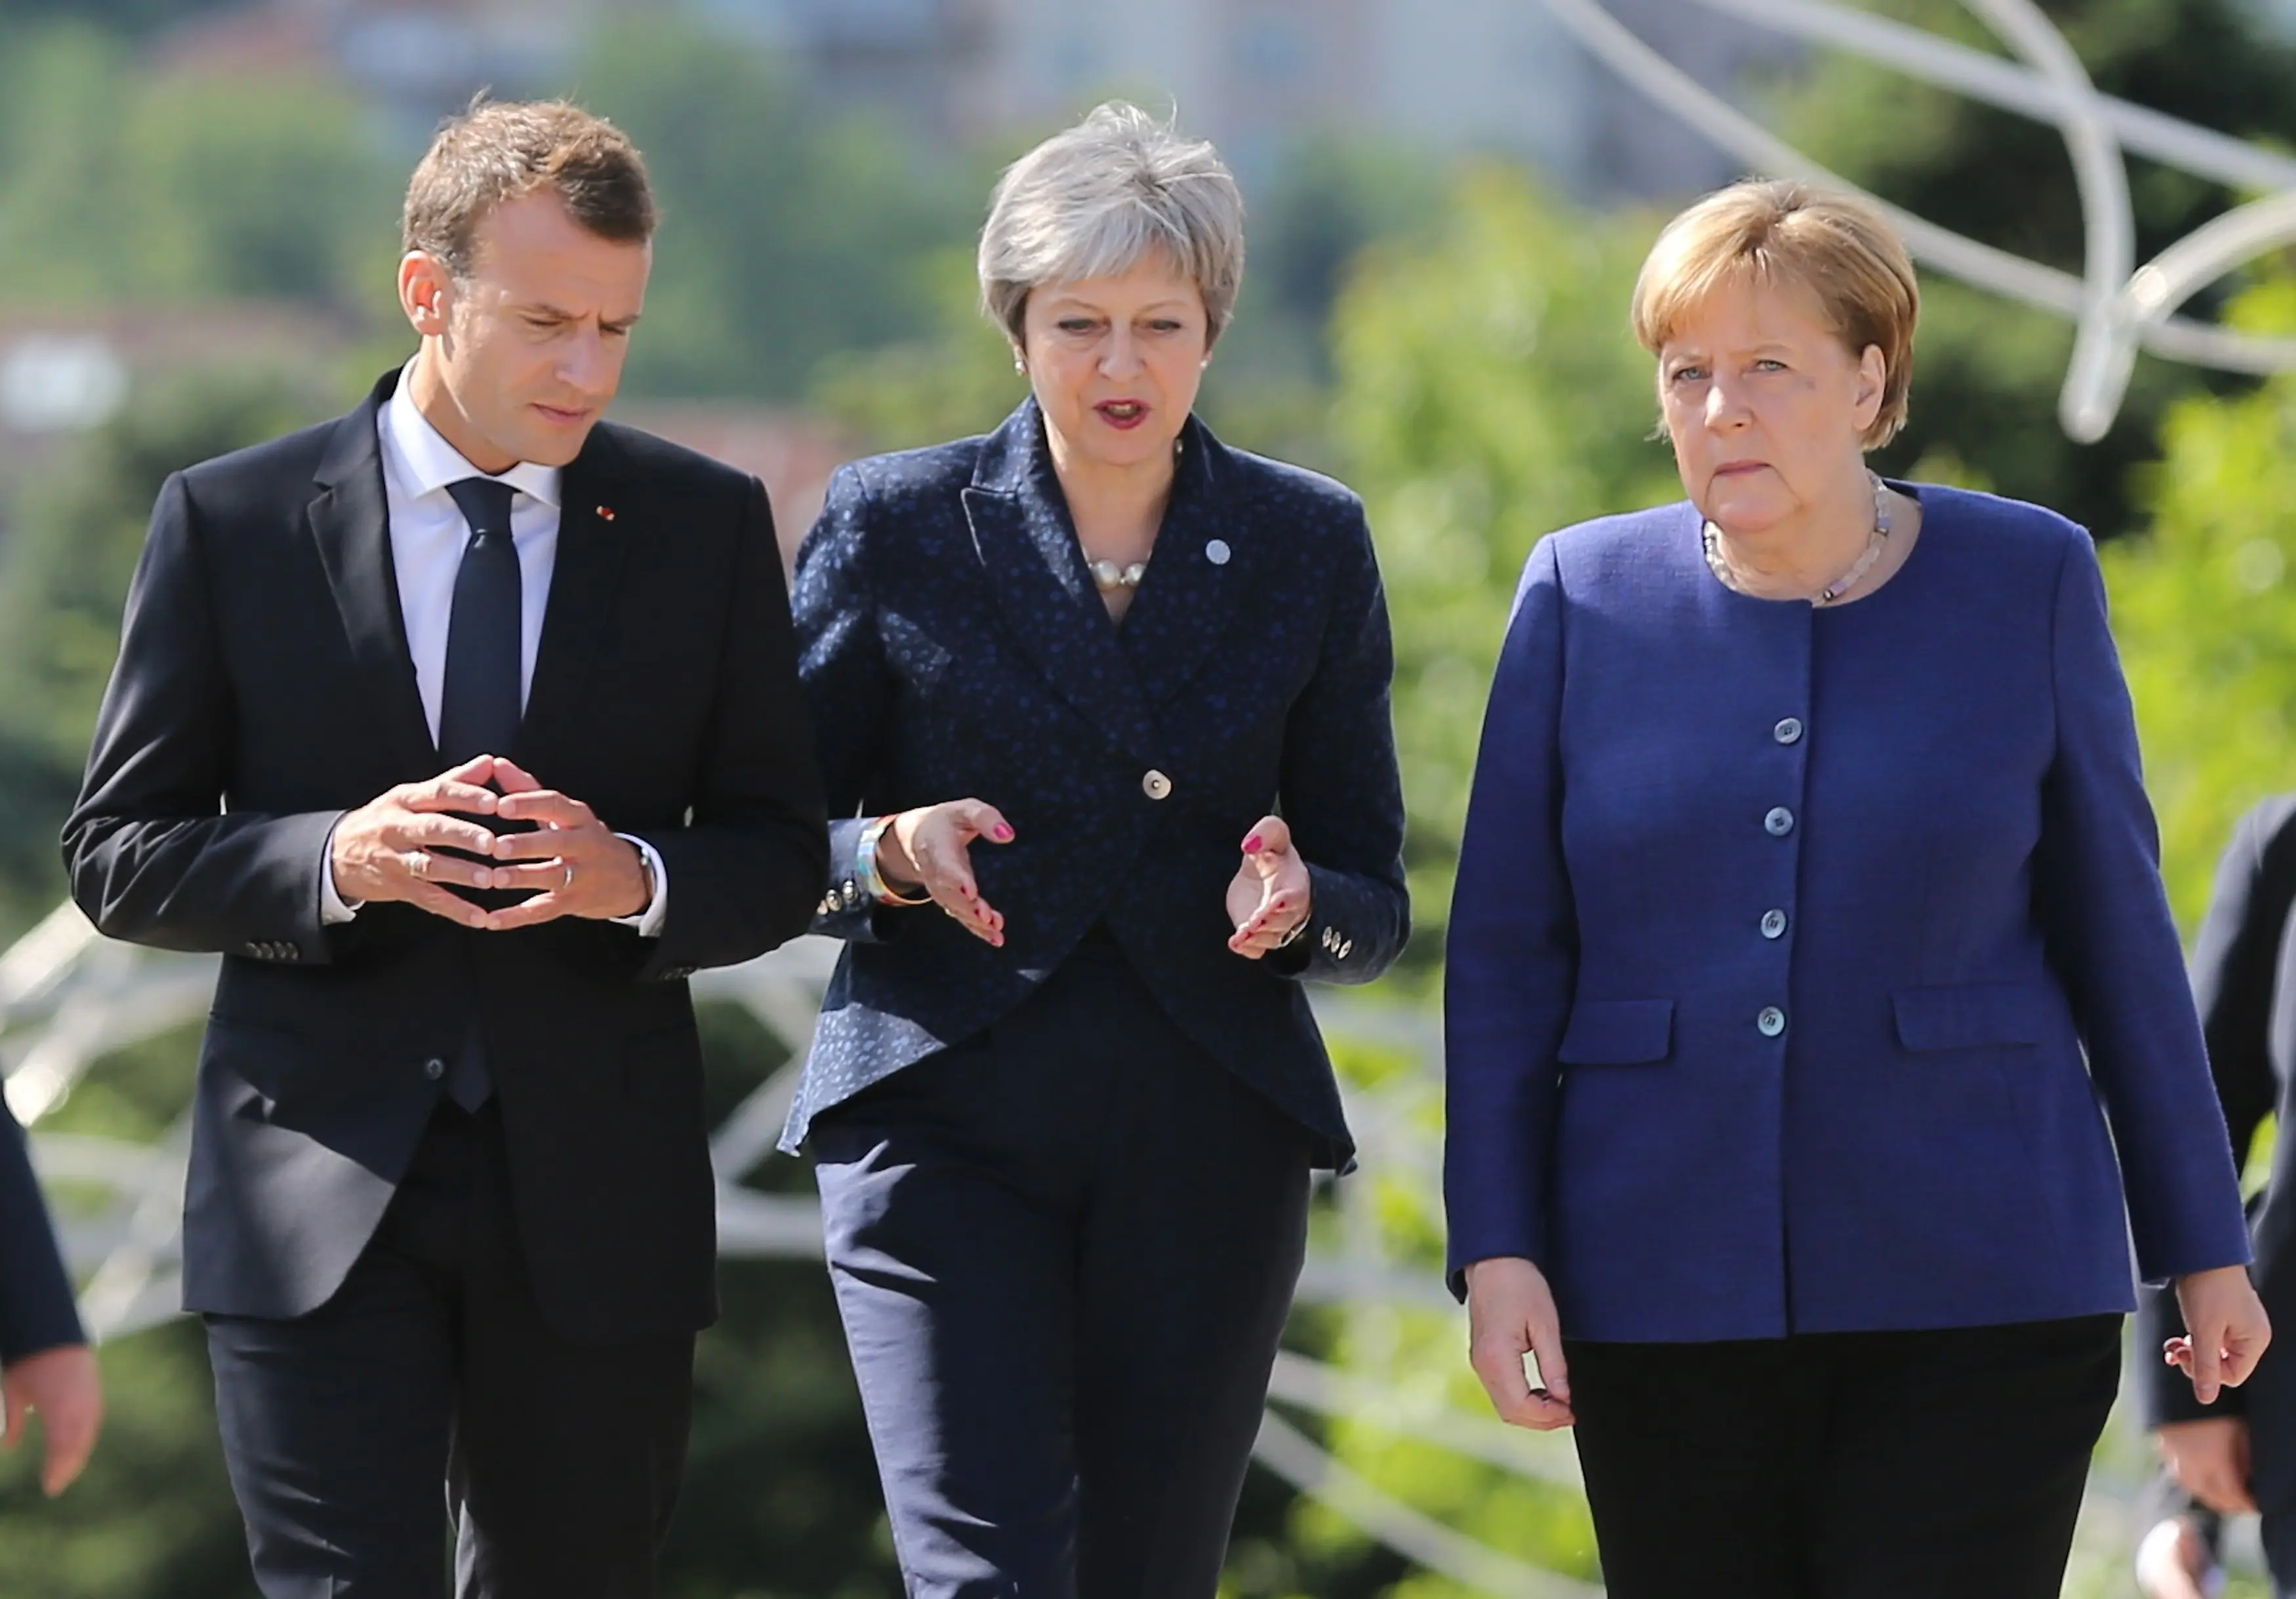 נשיא צרפת, עמנואל מקרון, ראש ממשלת בריטניה, תרזה מיי, קנצלרית גרמניה, אנגלה מרקל  במהלך פסגת האיחוד האירופי בסויפה, בולגריה 17 במאי 2018